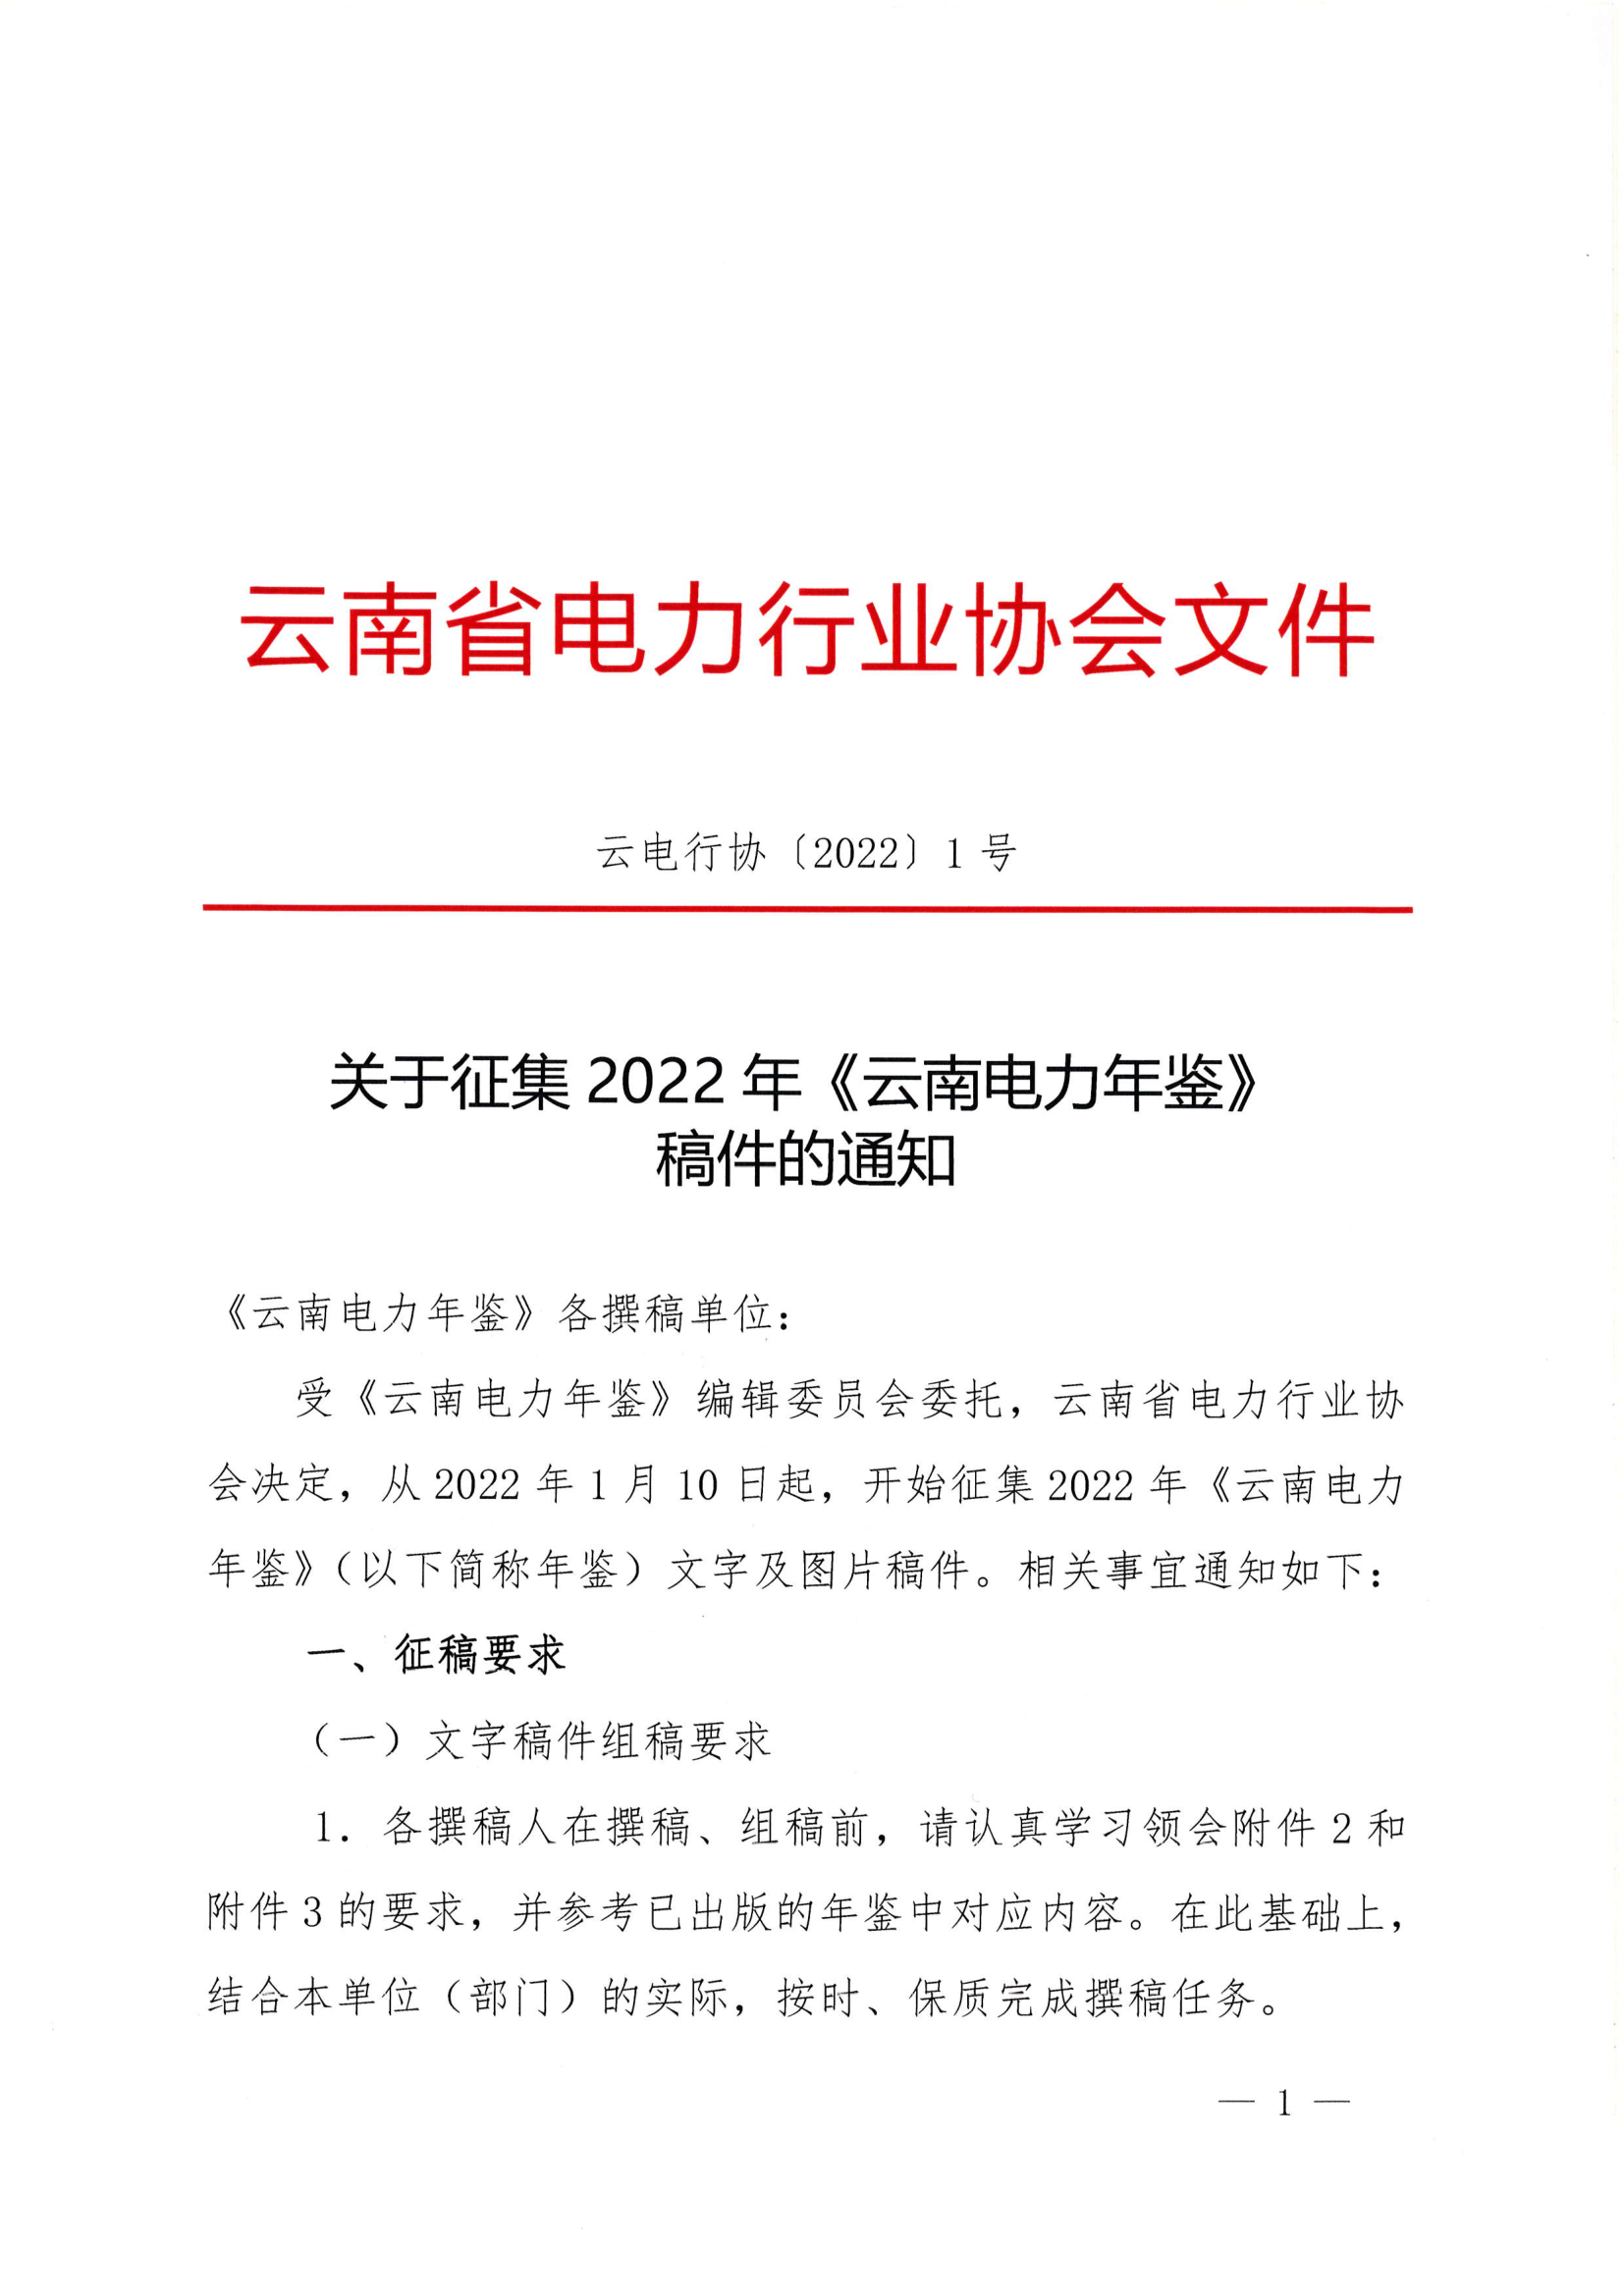 关于征集2022年《云南电力年鉴》稿件的通知_1.png